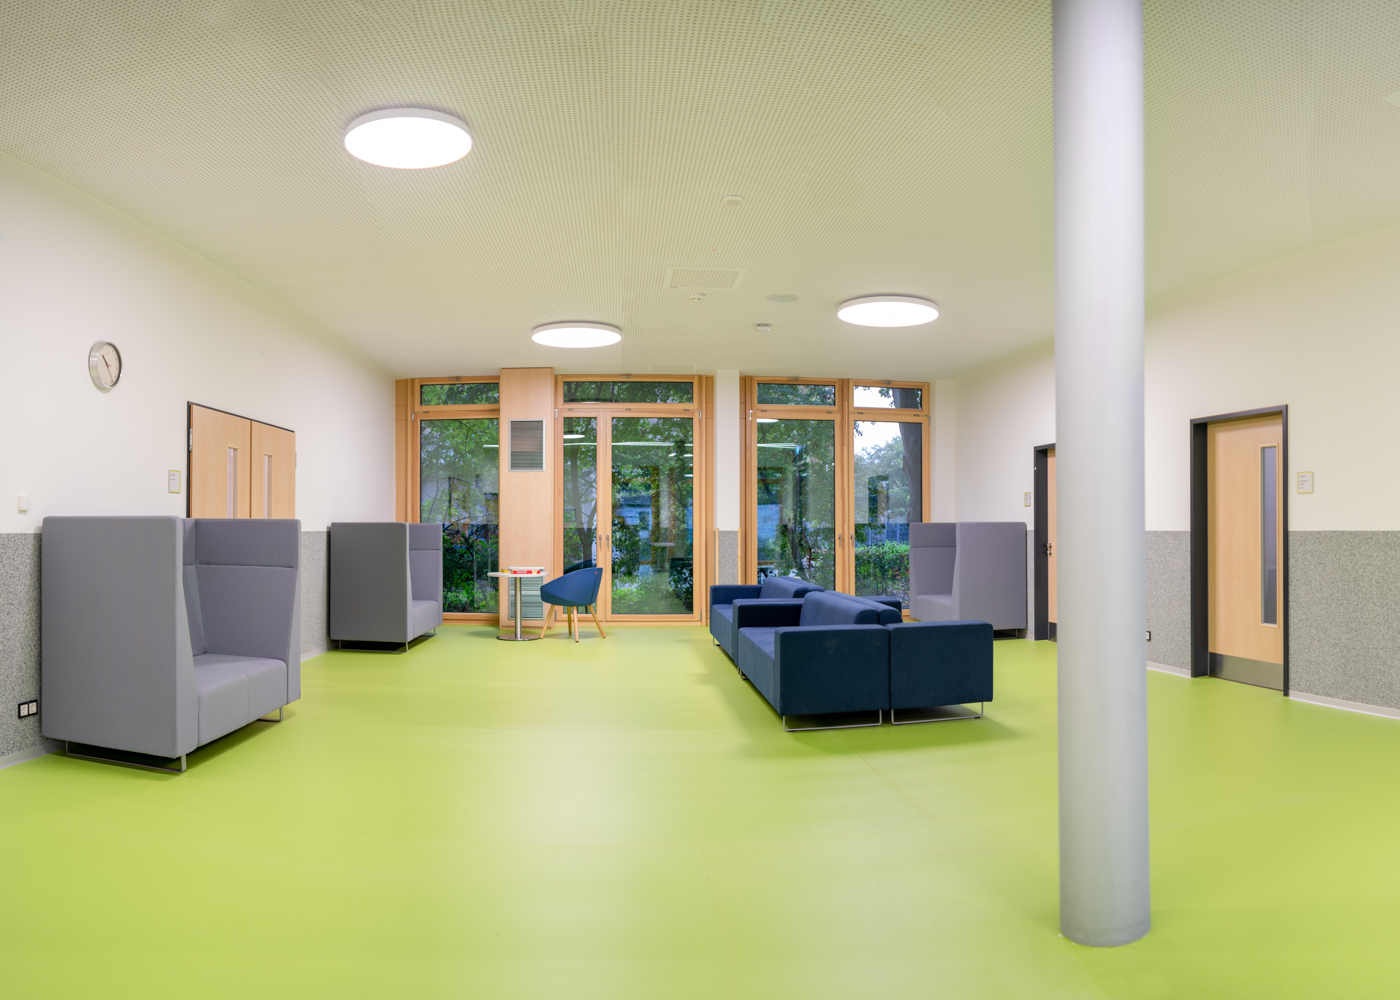 Freizeitbereich im Neubau der Johann-Camenius-Schule in Pinneberg